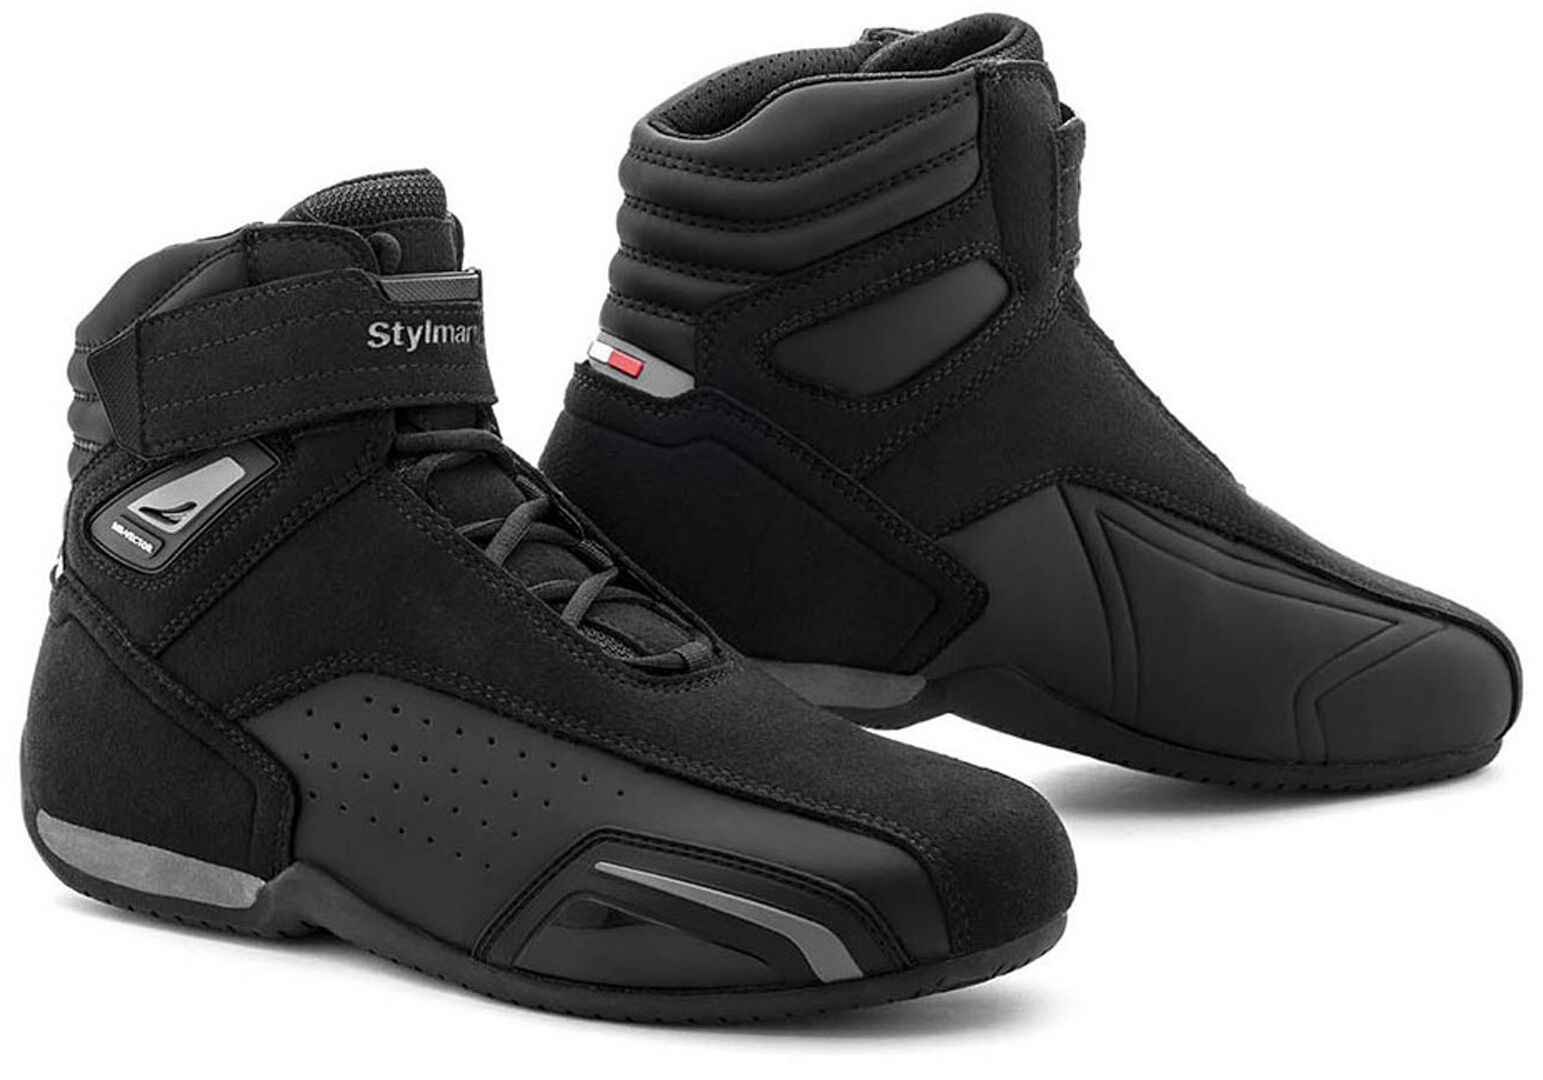 Stylmartin Vector Air Zapatos de moto - Negro (43)